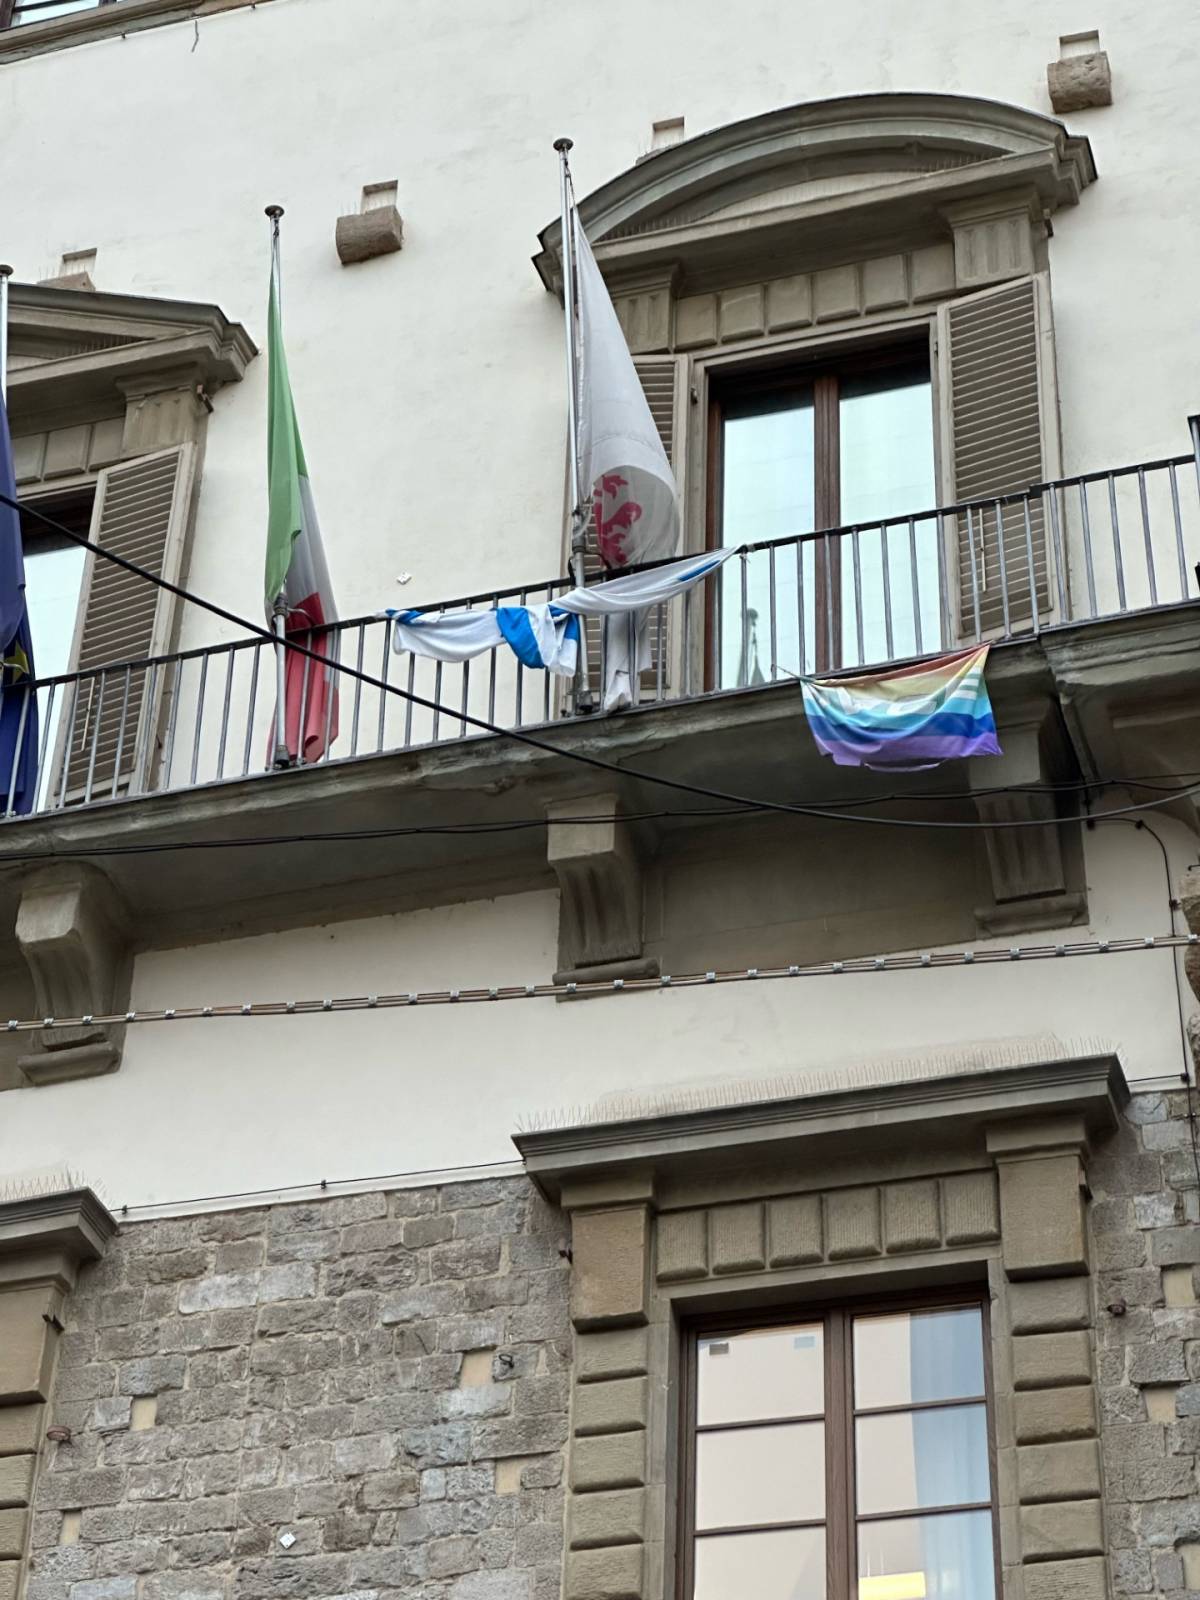 La bandiera israeliana esposta a Palazzo Vecchio, poco prima della rimozione